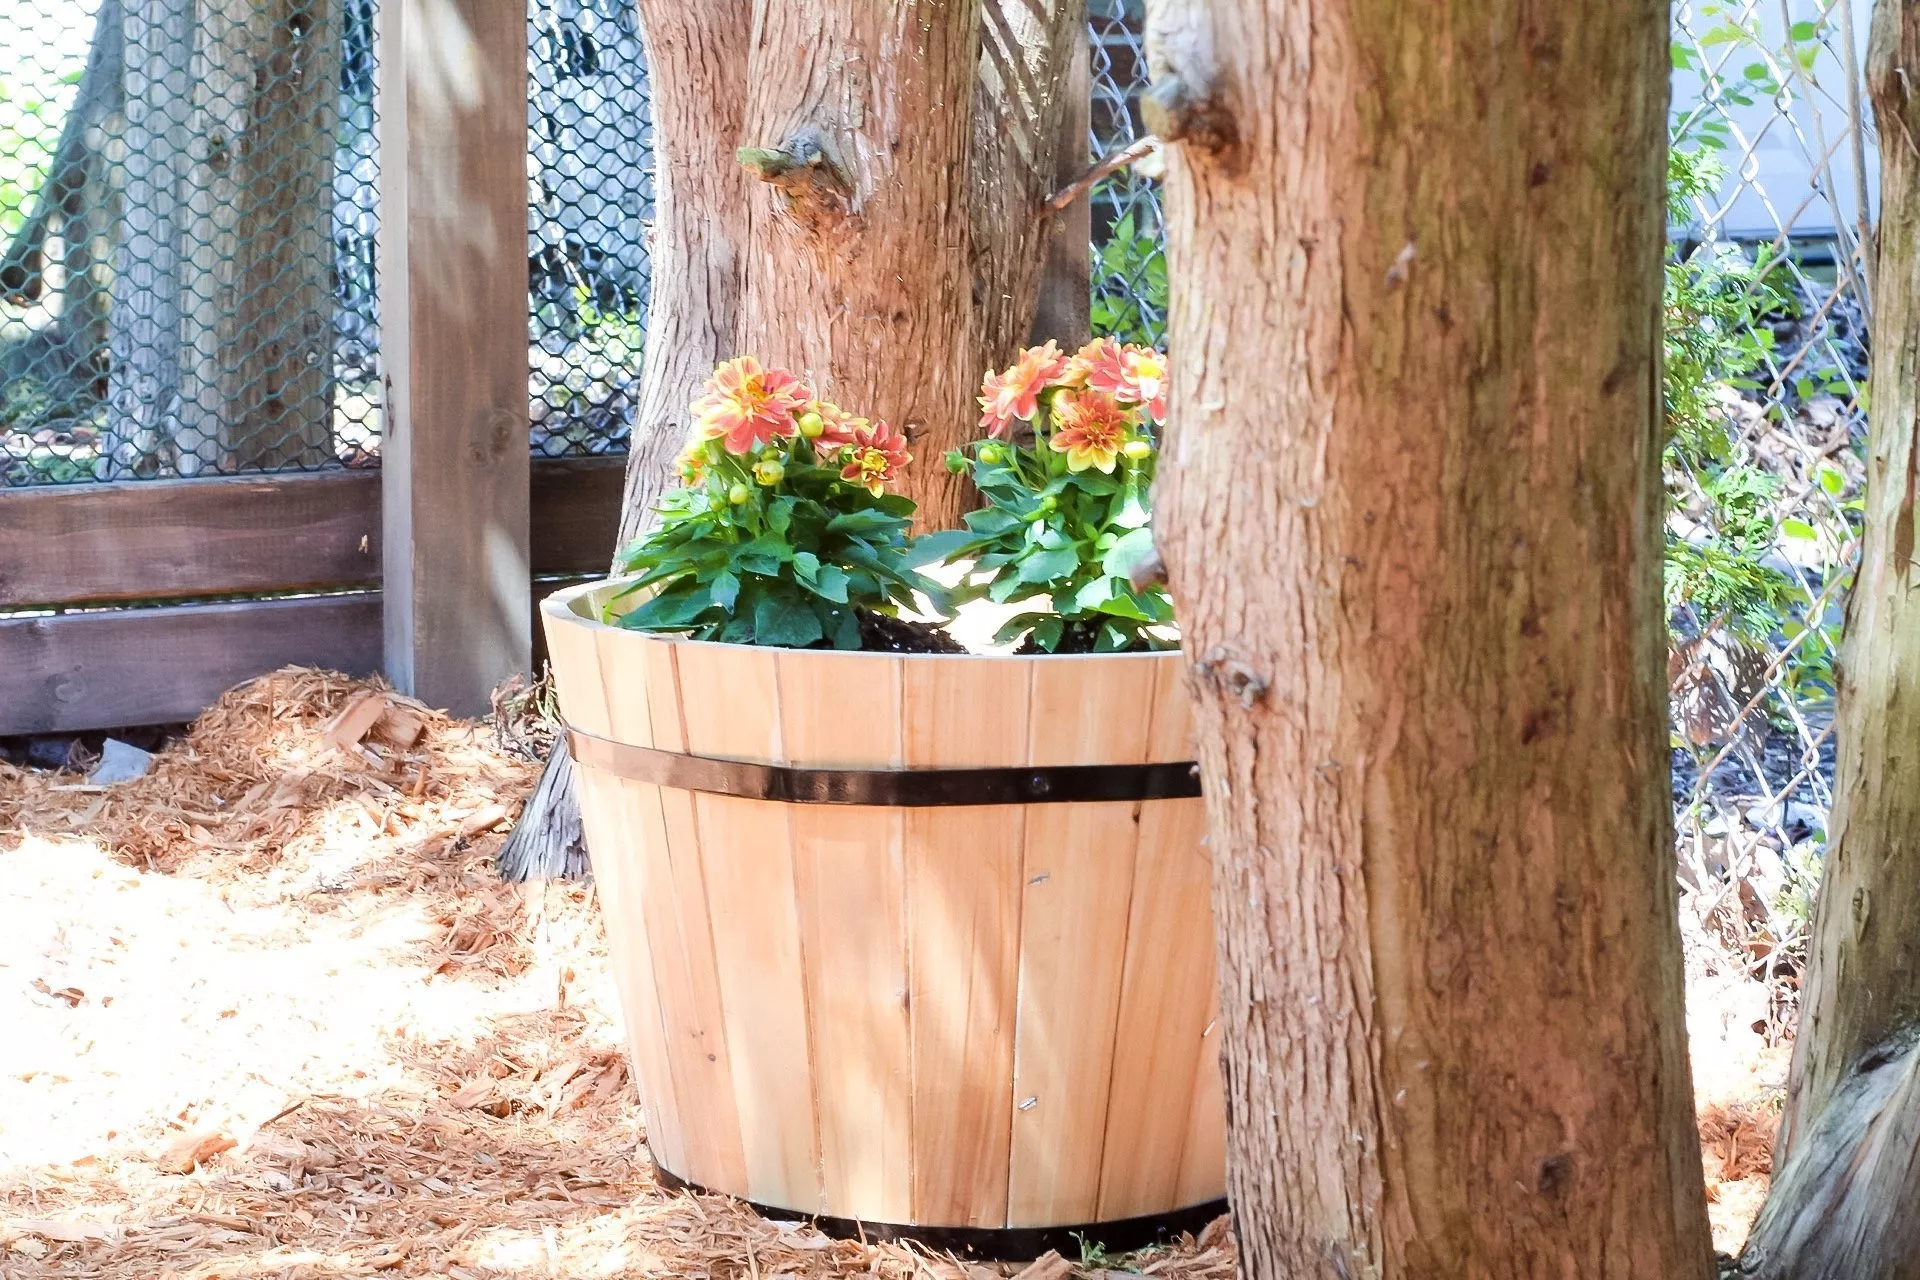 gardening tips - filling barrel